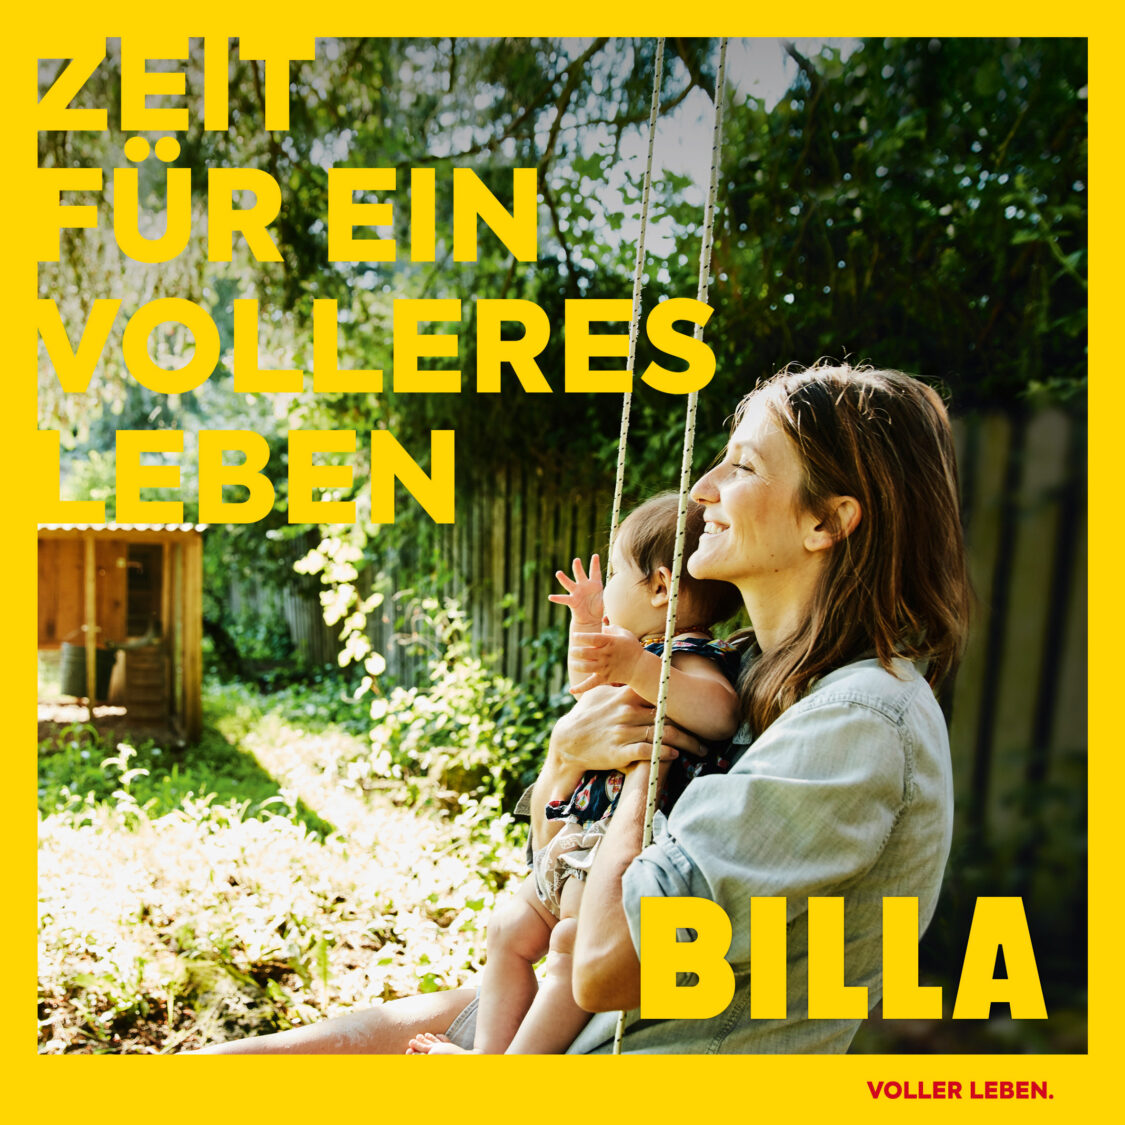 Billa Kampagne – Voller Leben, Quelle: Billa